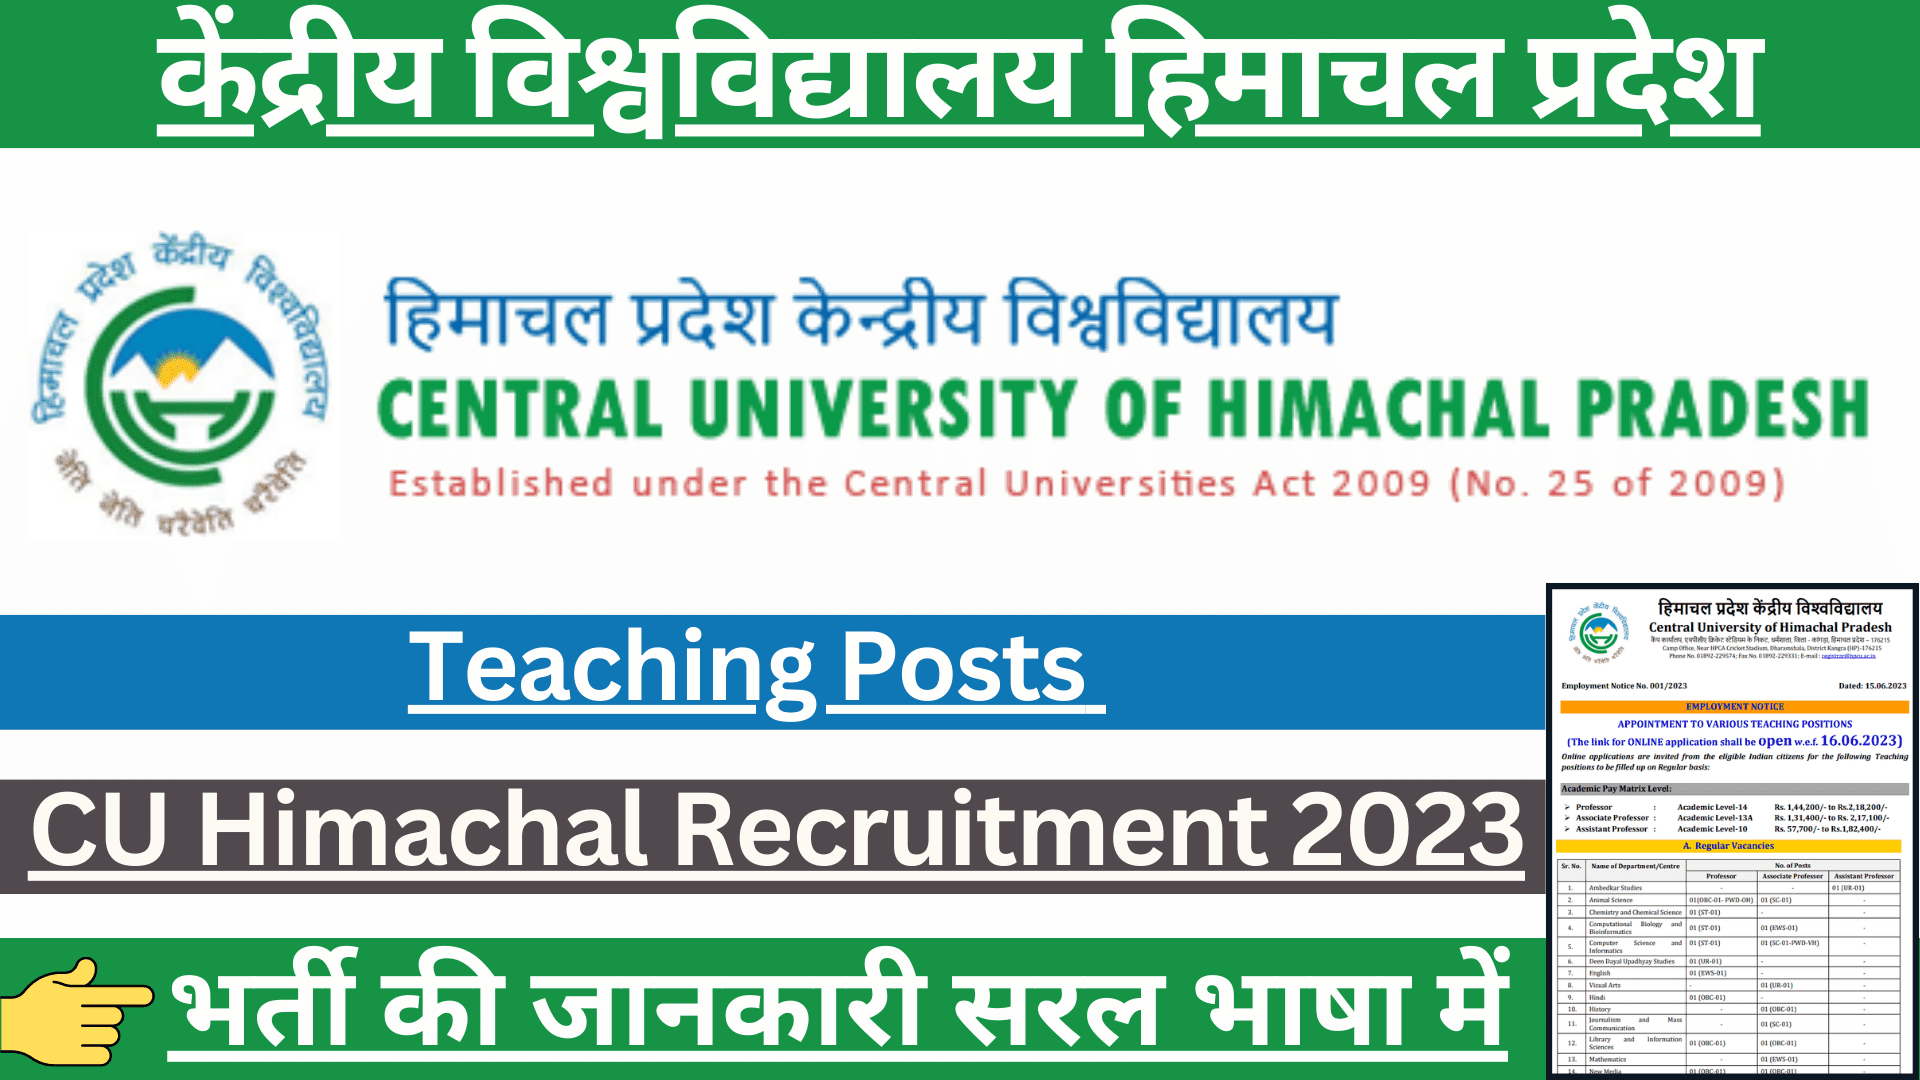 CU Himachal Recruitment 2023